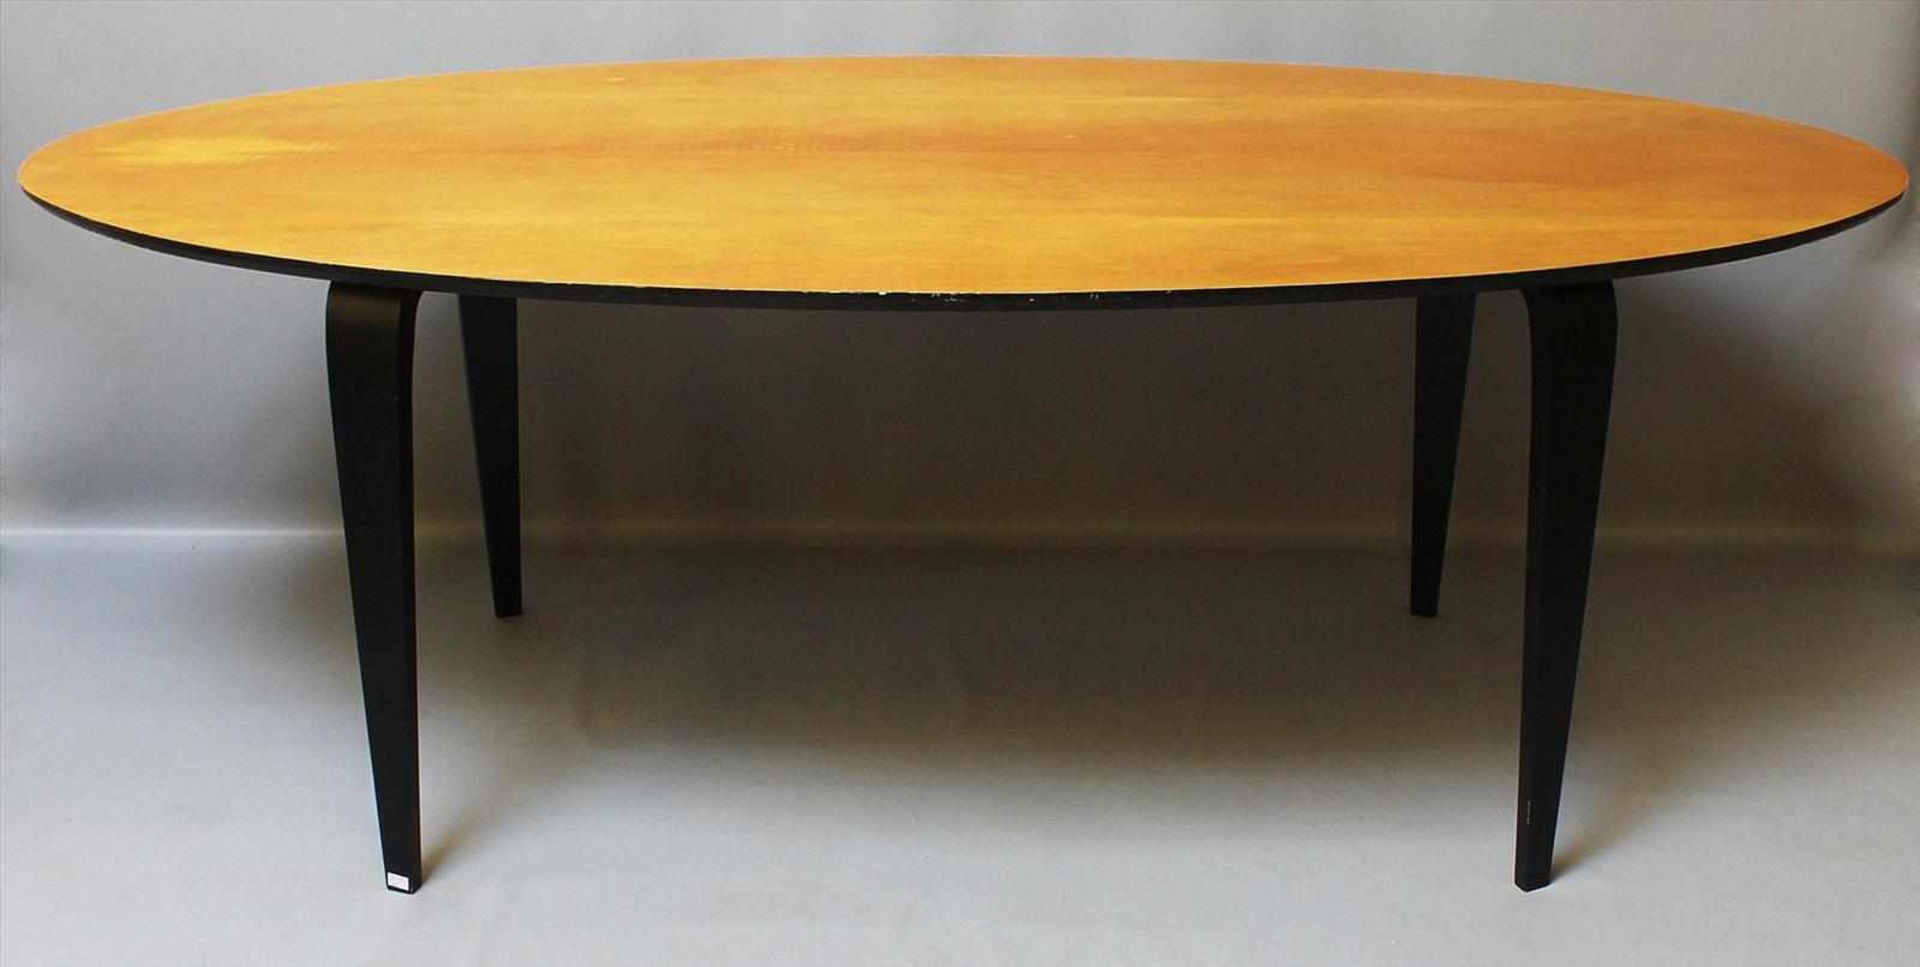 Cherner, Norman (1920 Brooklyn 1987)Cherner Table. Geformtes Schichtholz, Beine und Unterseite der